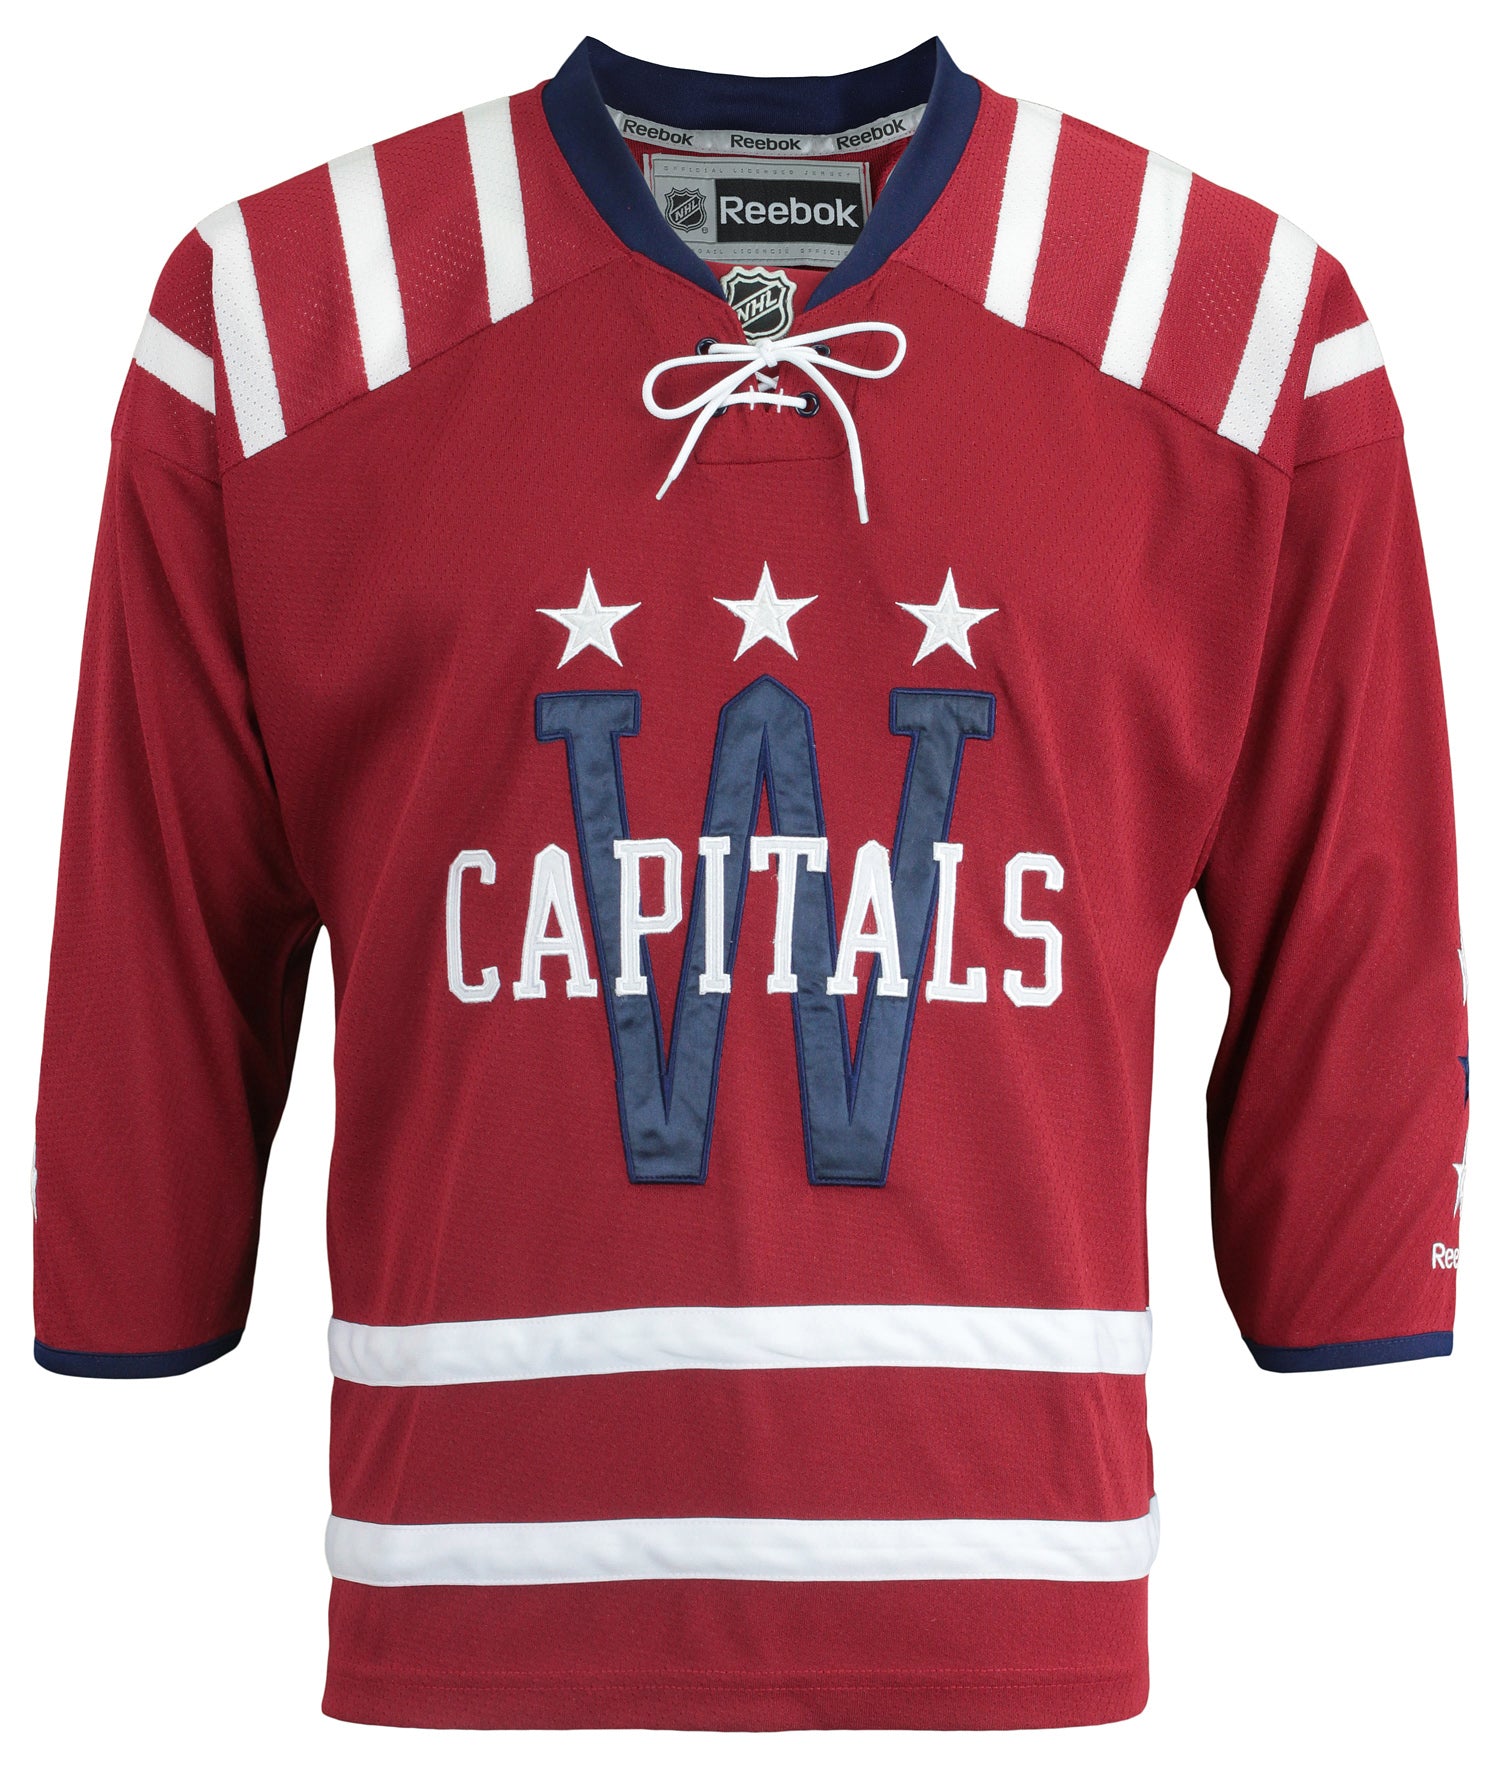 Vintage Reebok Full Sleeve Hockey Jersey / Mens Medium / Baby